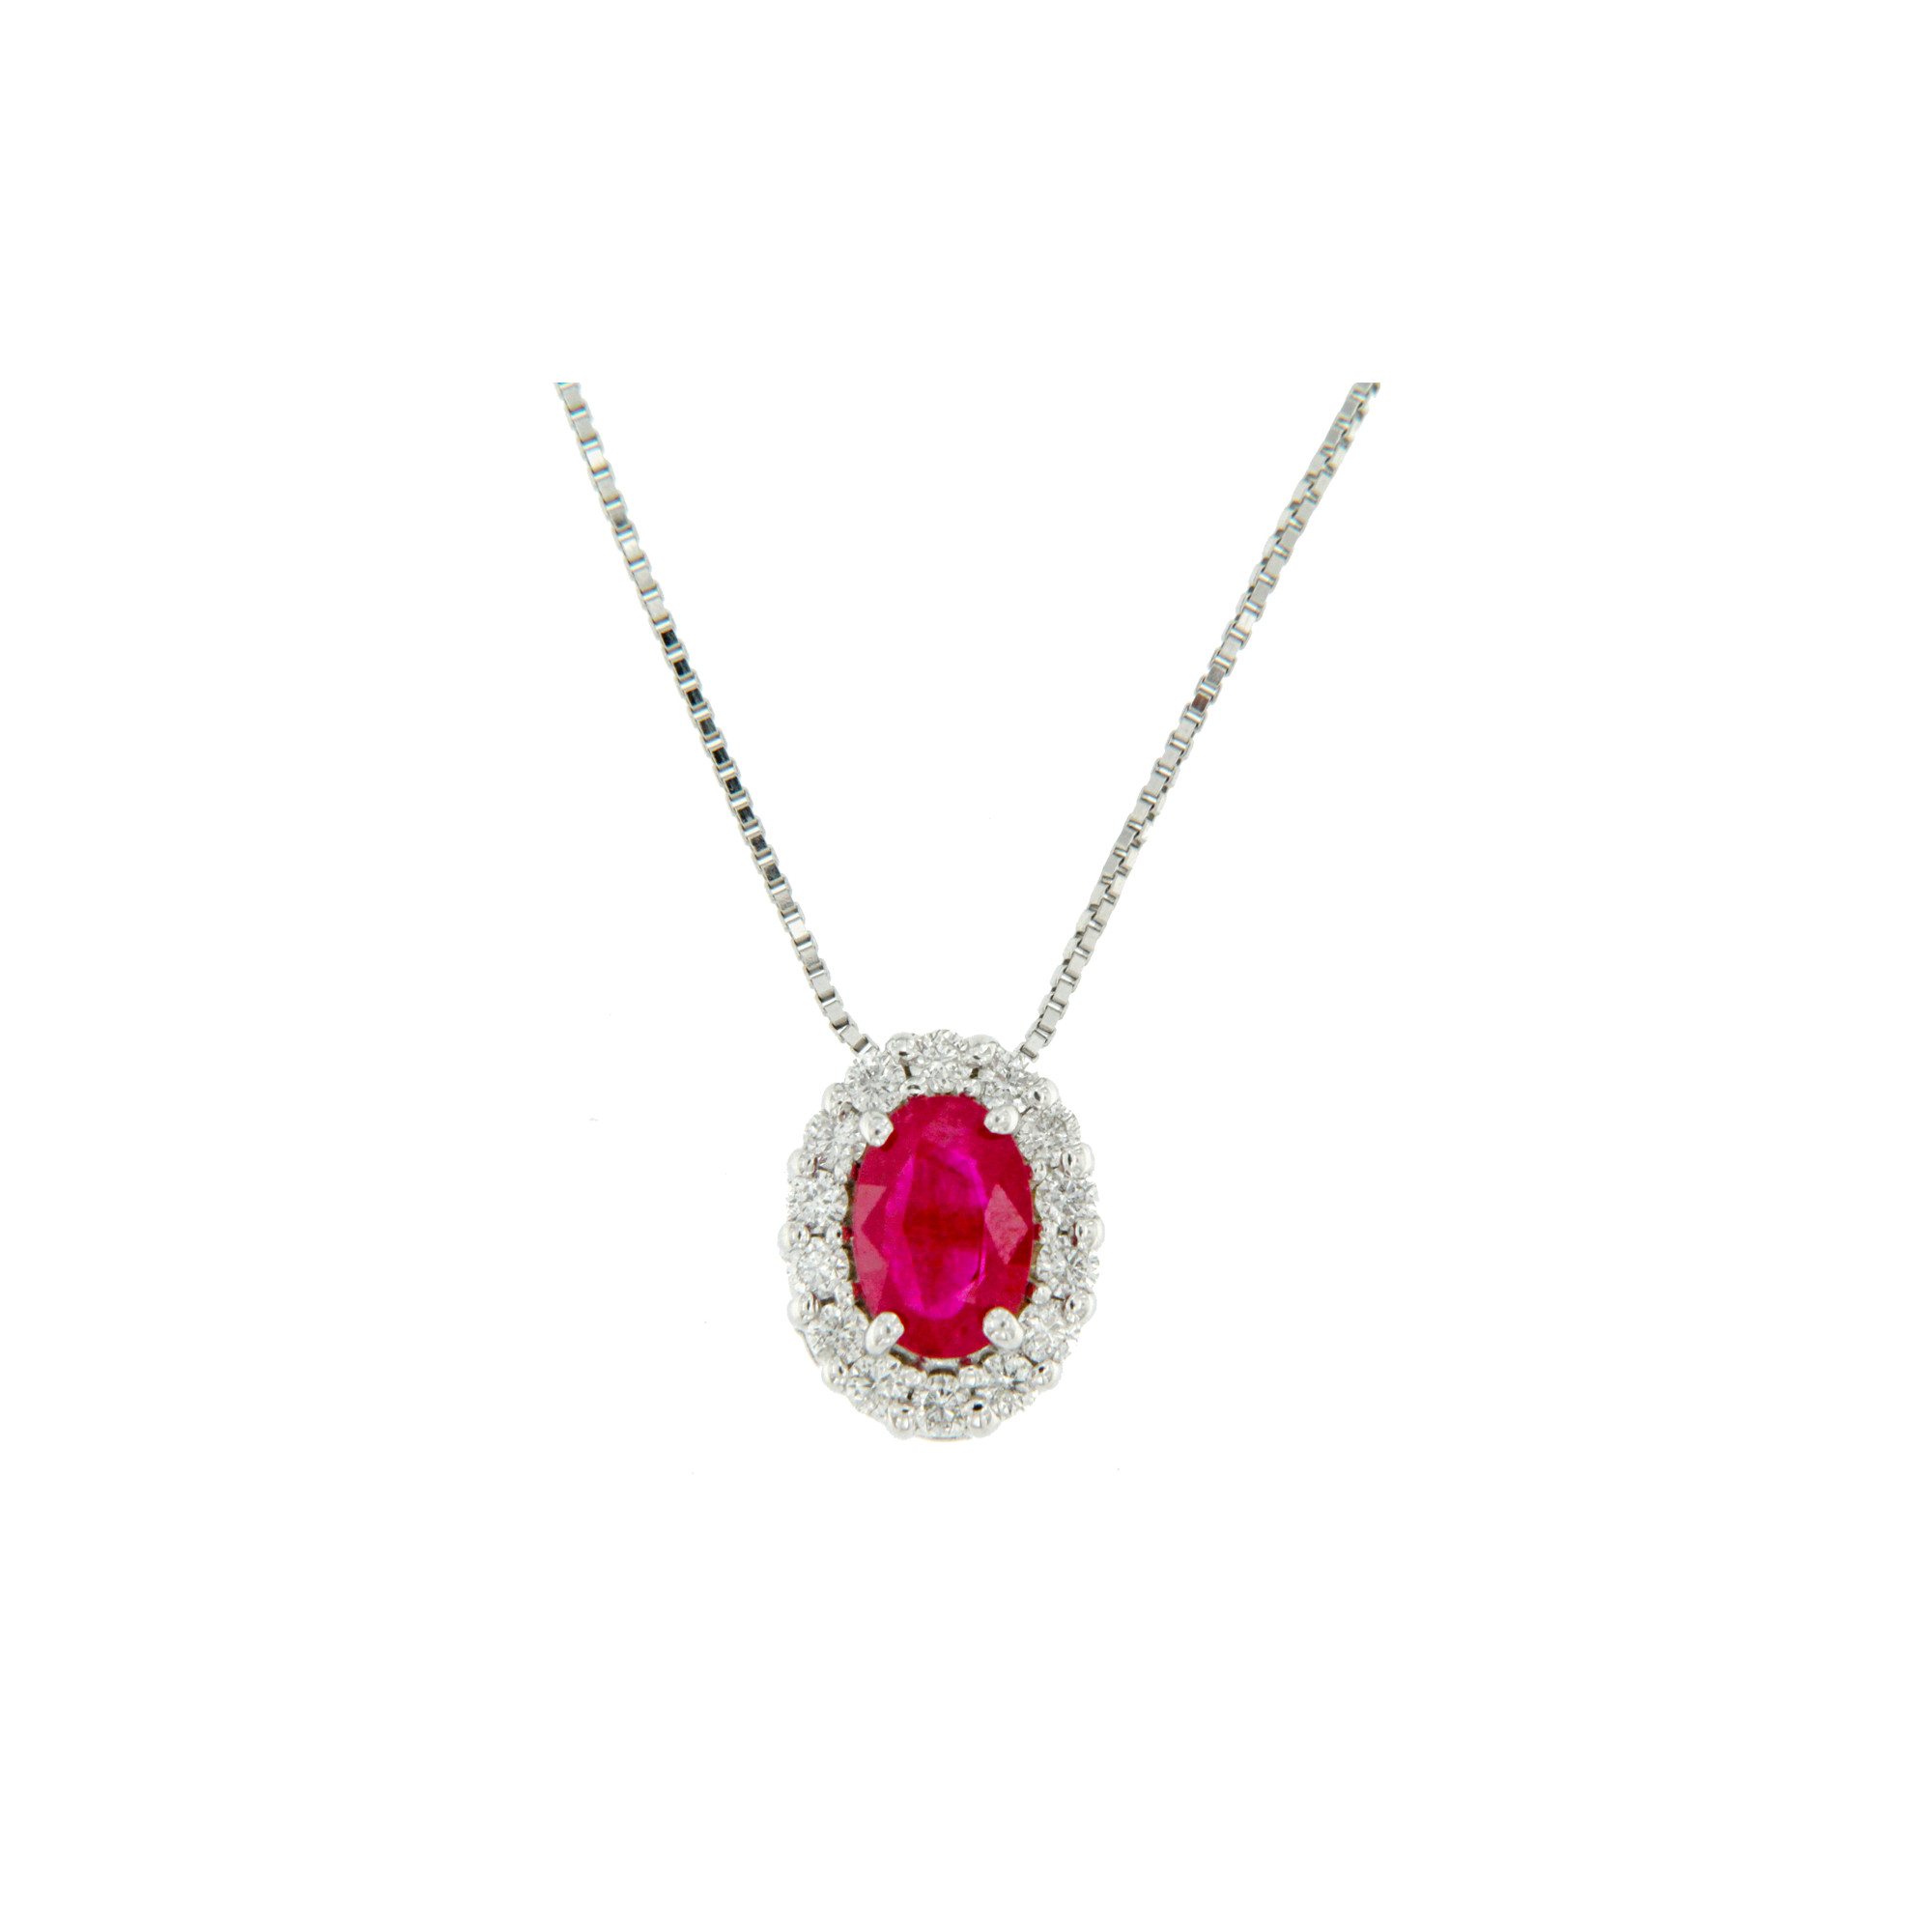 GIOIELLI collana pendente rubino e diamanti diamonds ruby necklace Bon Ton online P6421R